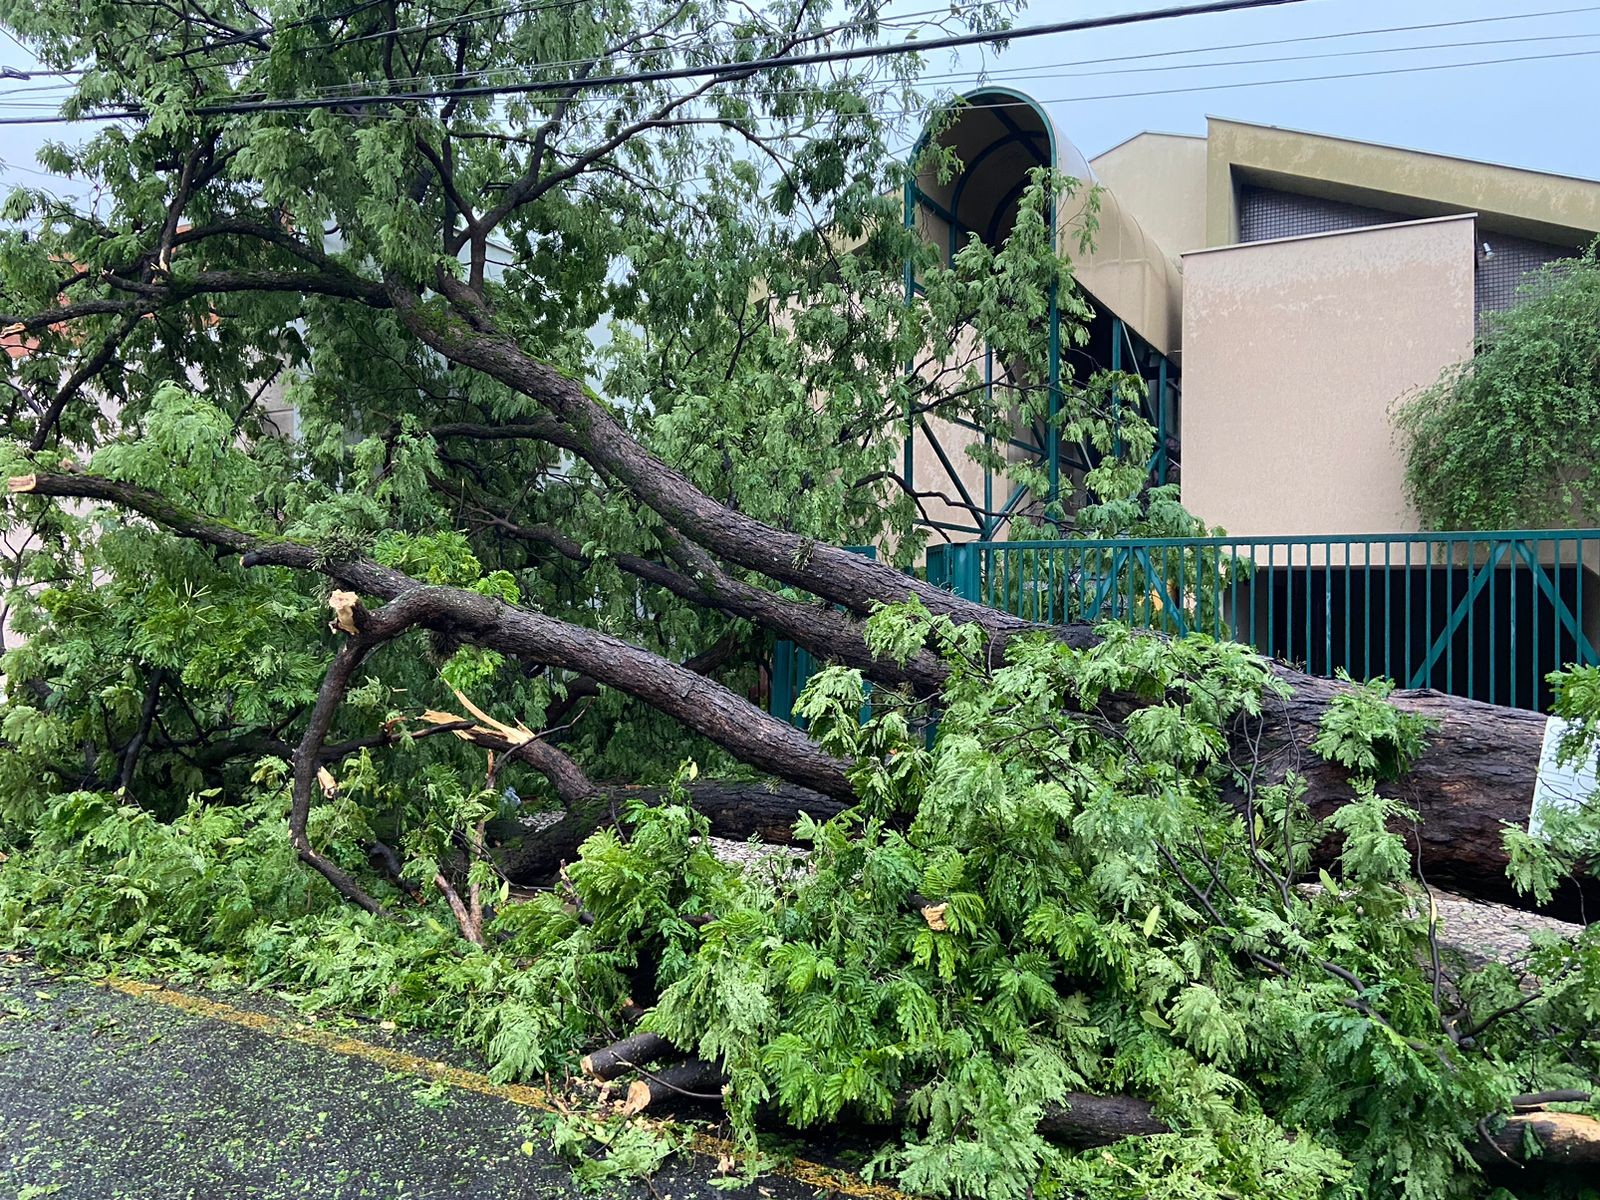 




Chuva deixa seis mortos no estado de SP, diz Defesa Civil; queda de árvores sobre carros e muros foram principal causa dos